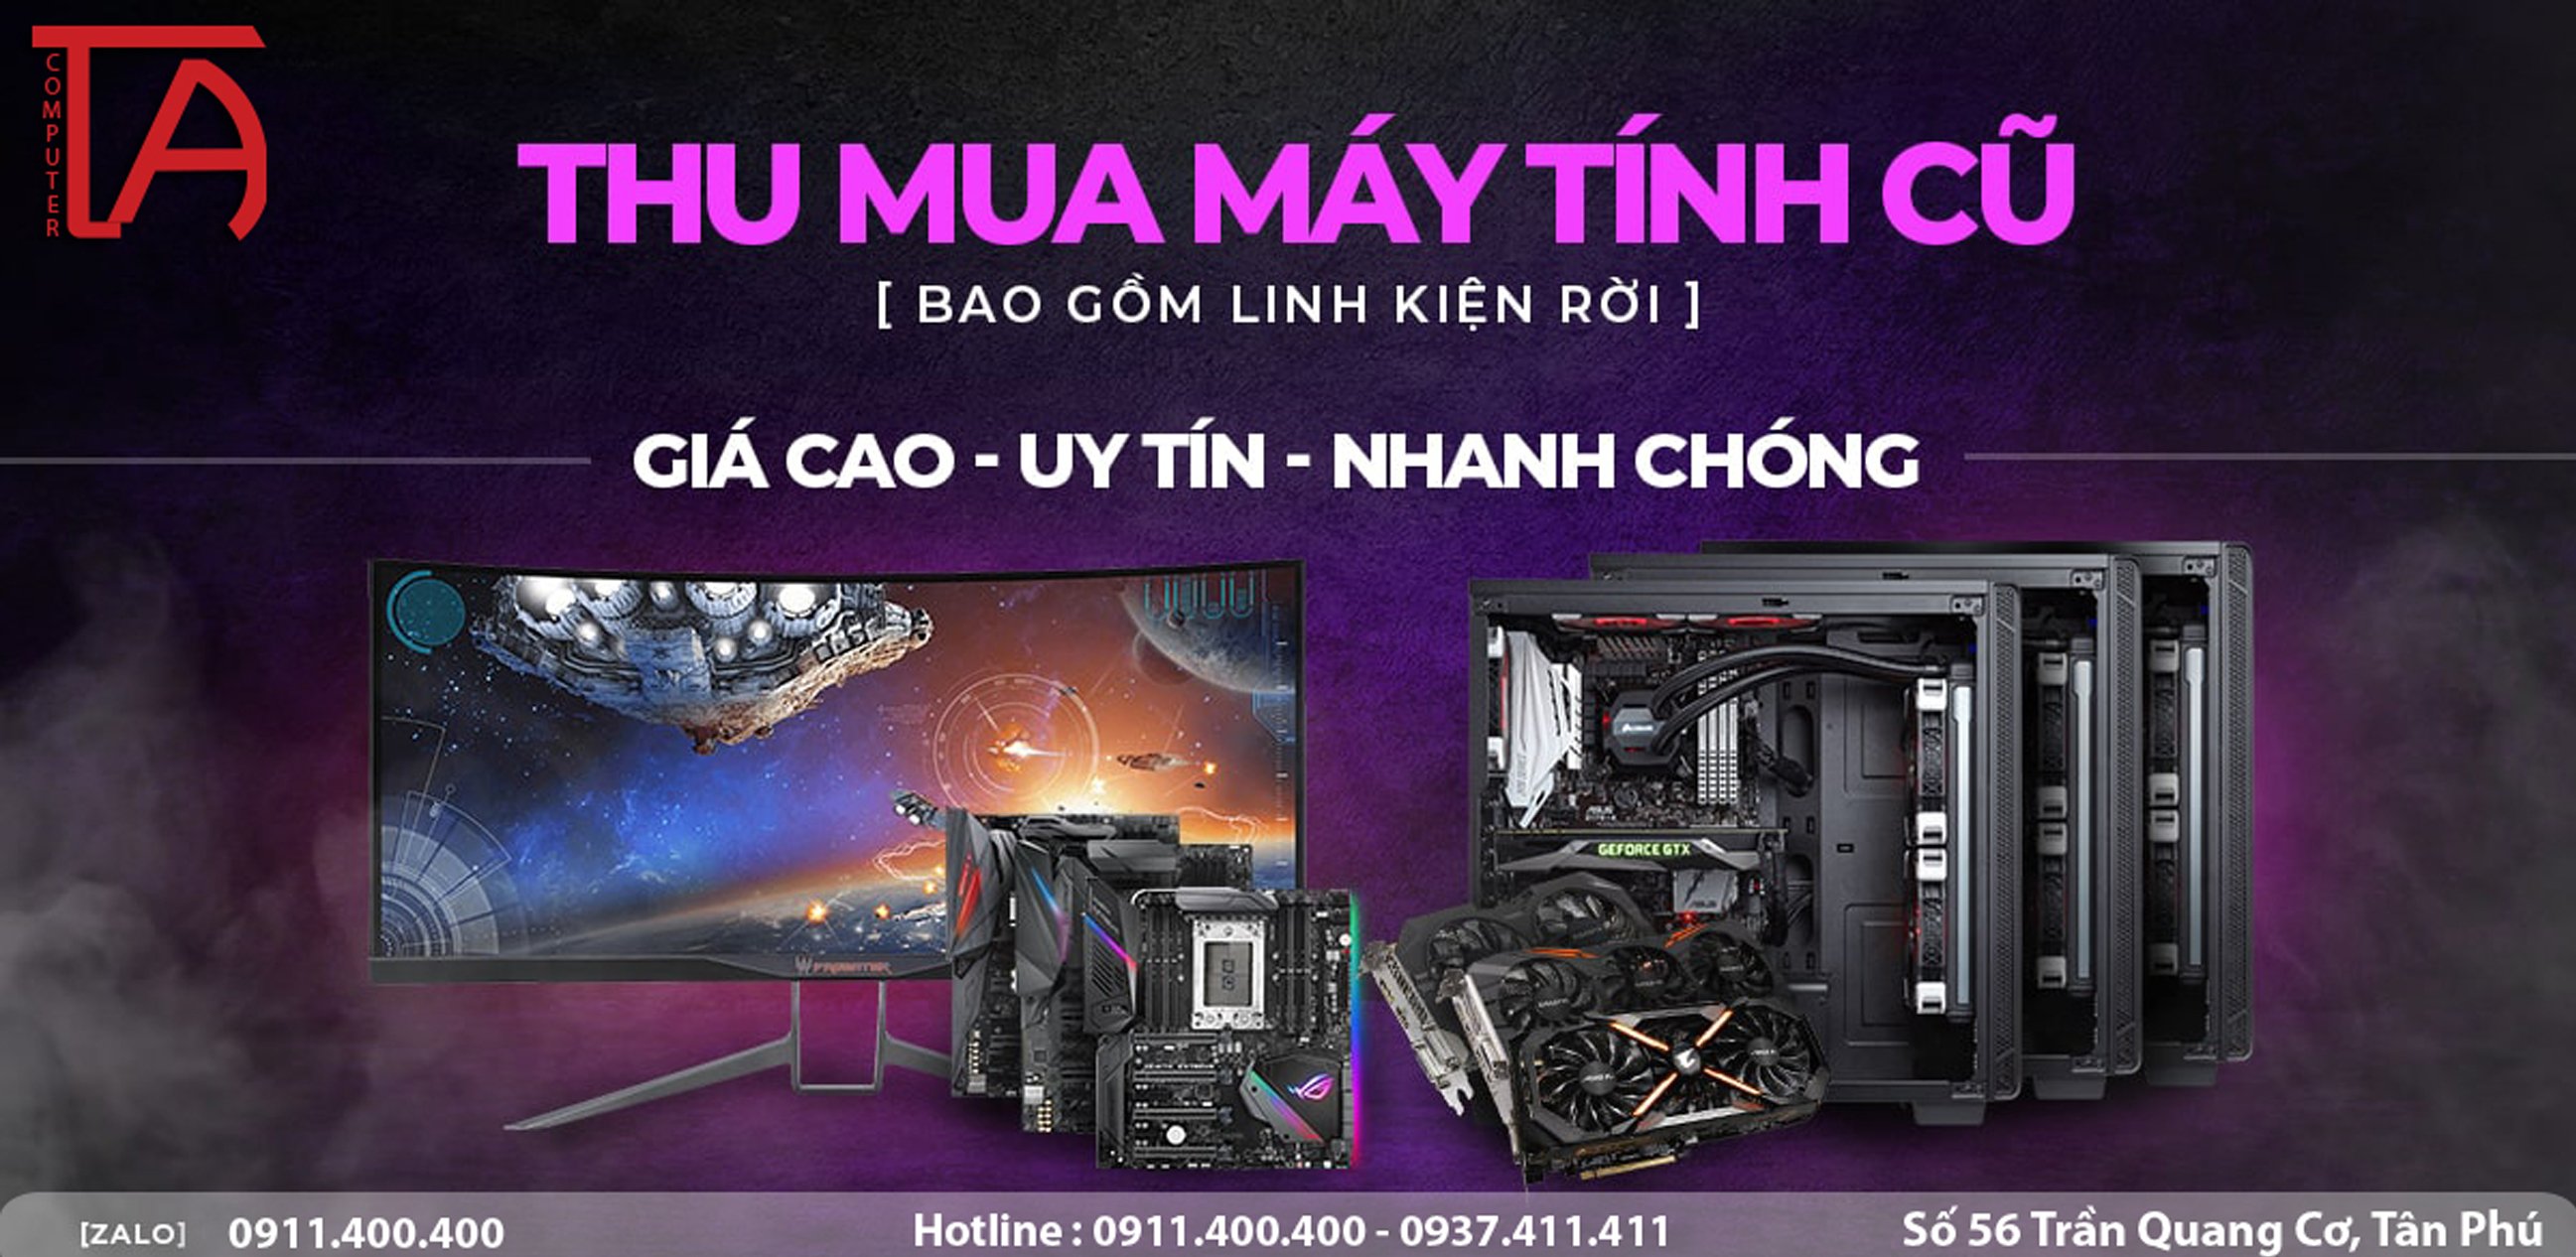 Thu mua máy tính cũ Quận Tân Phú